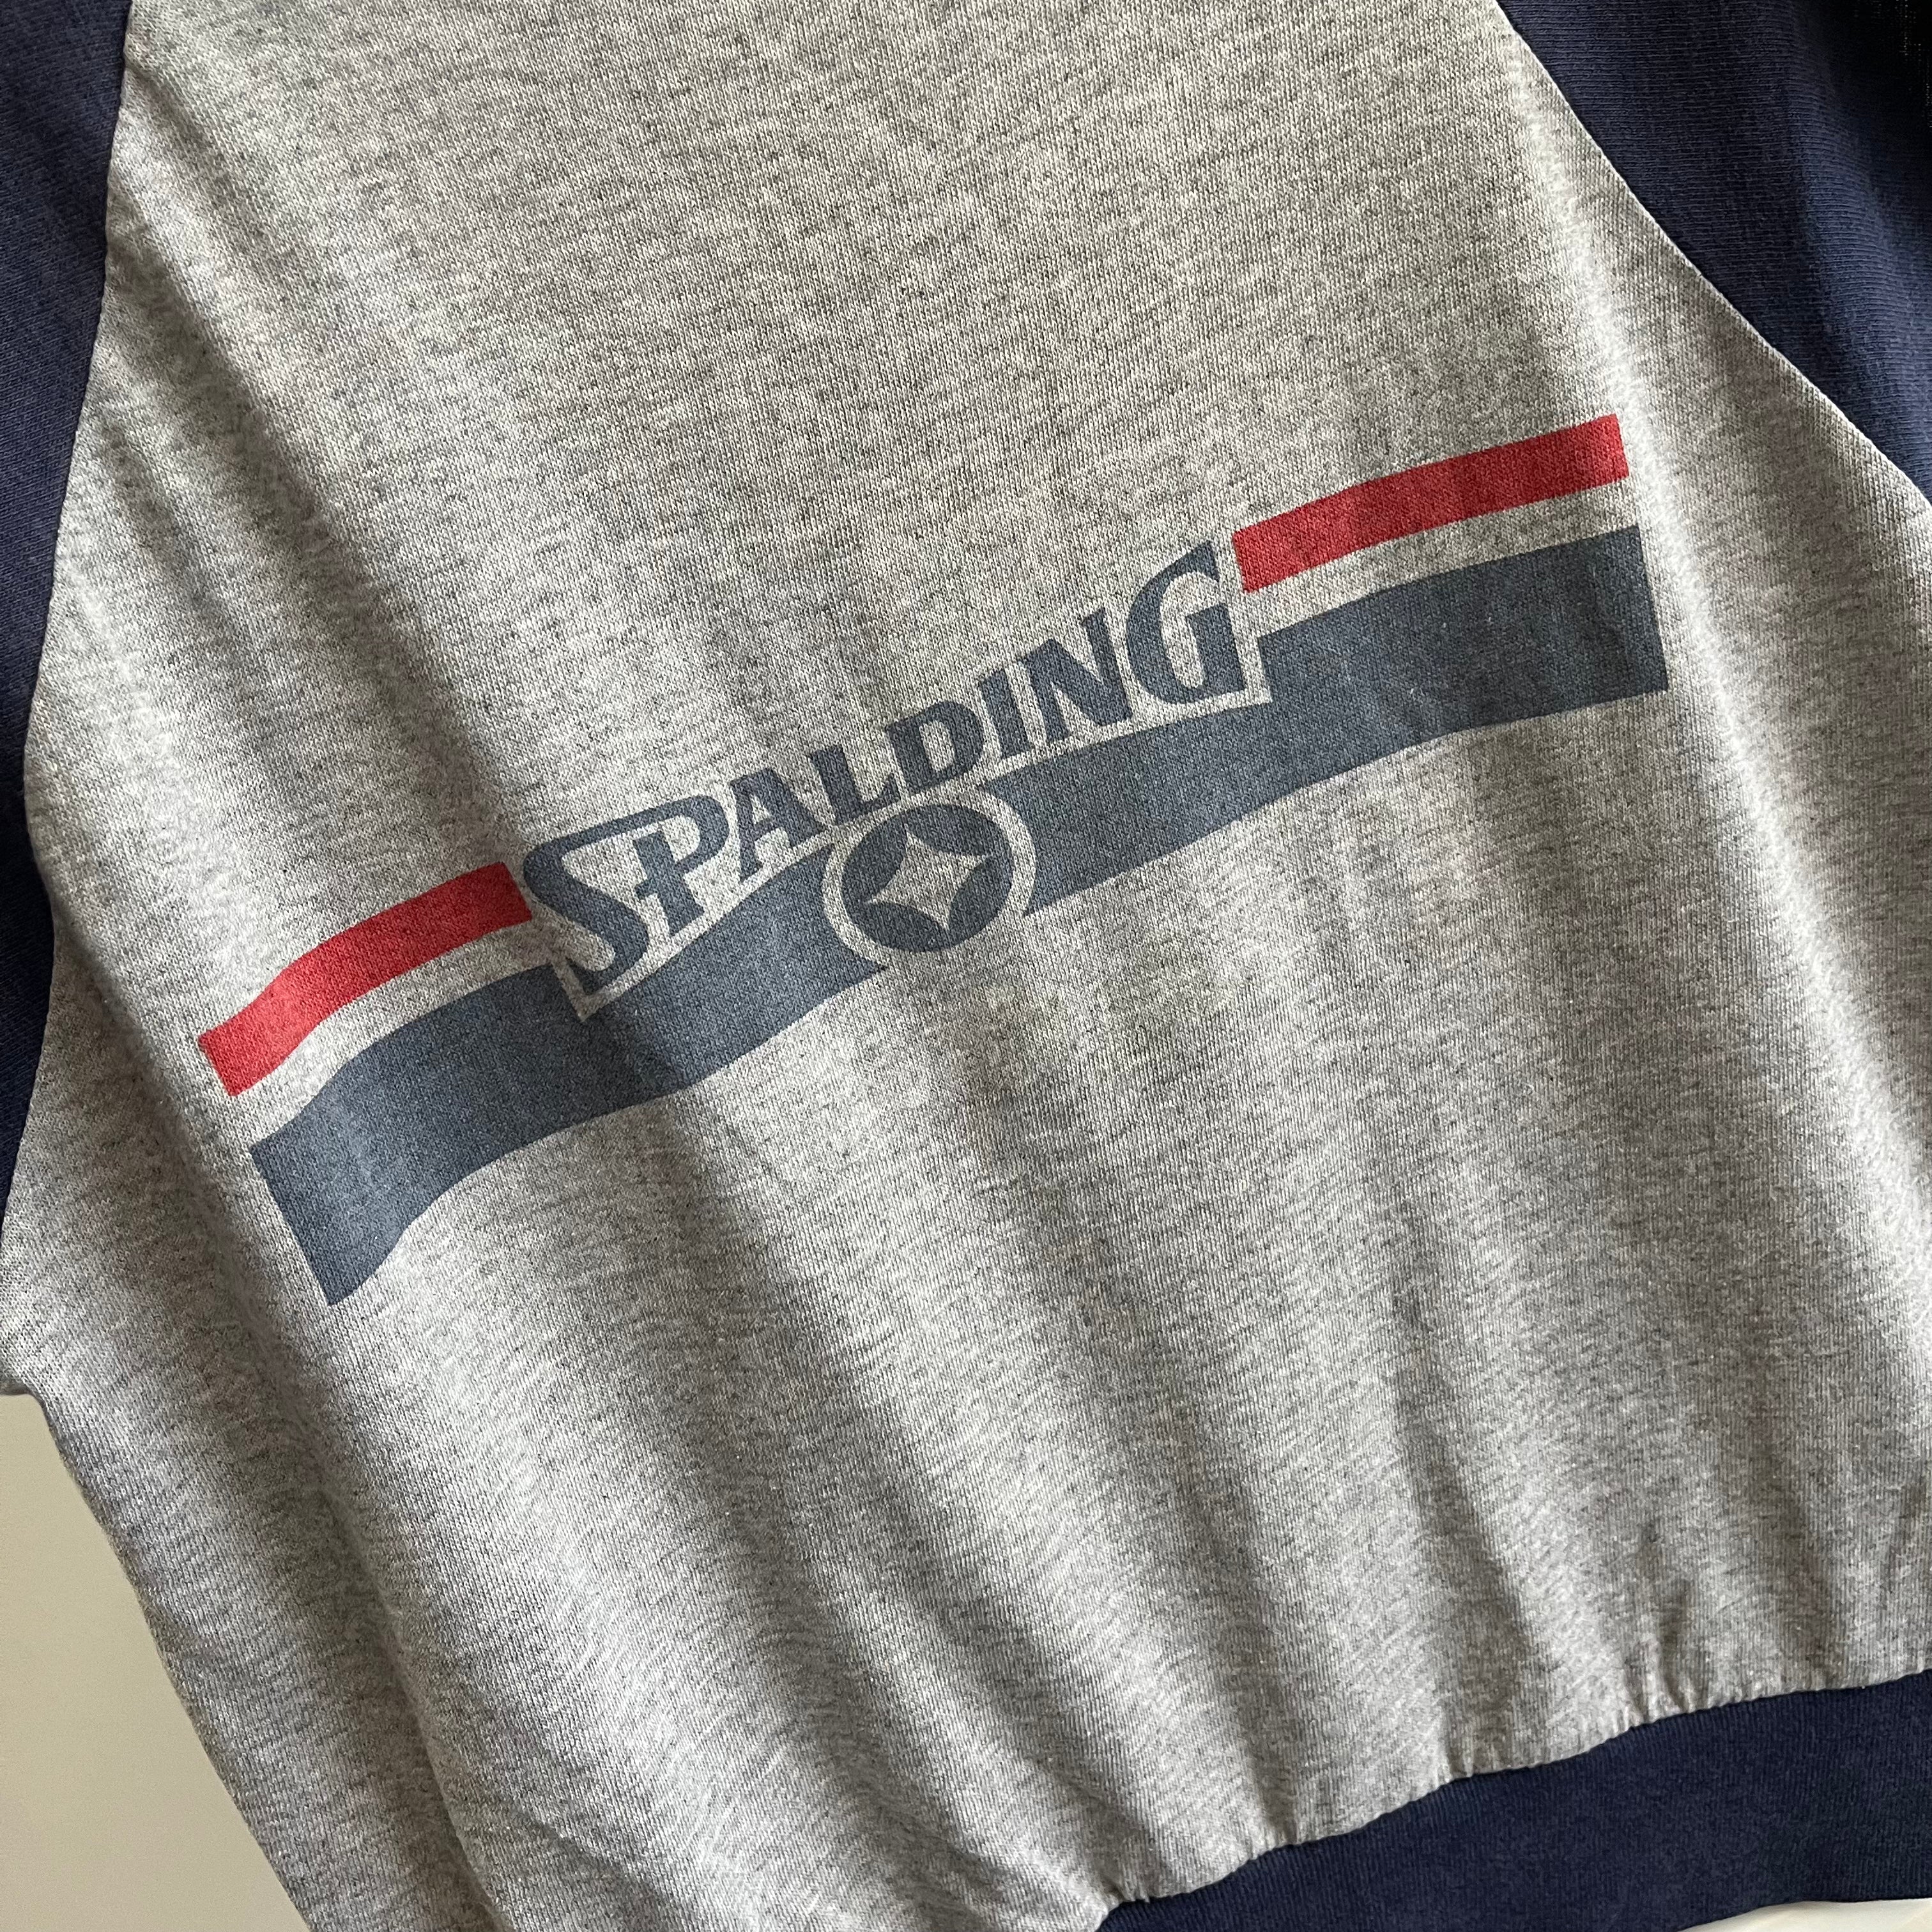 Échauffement musculaire style t-shirt à manches courtes Spaulding des années 1980